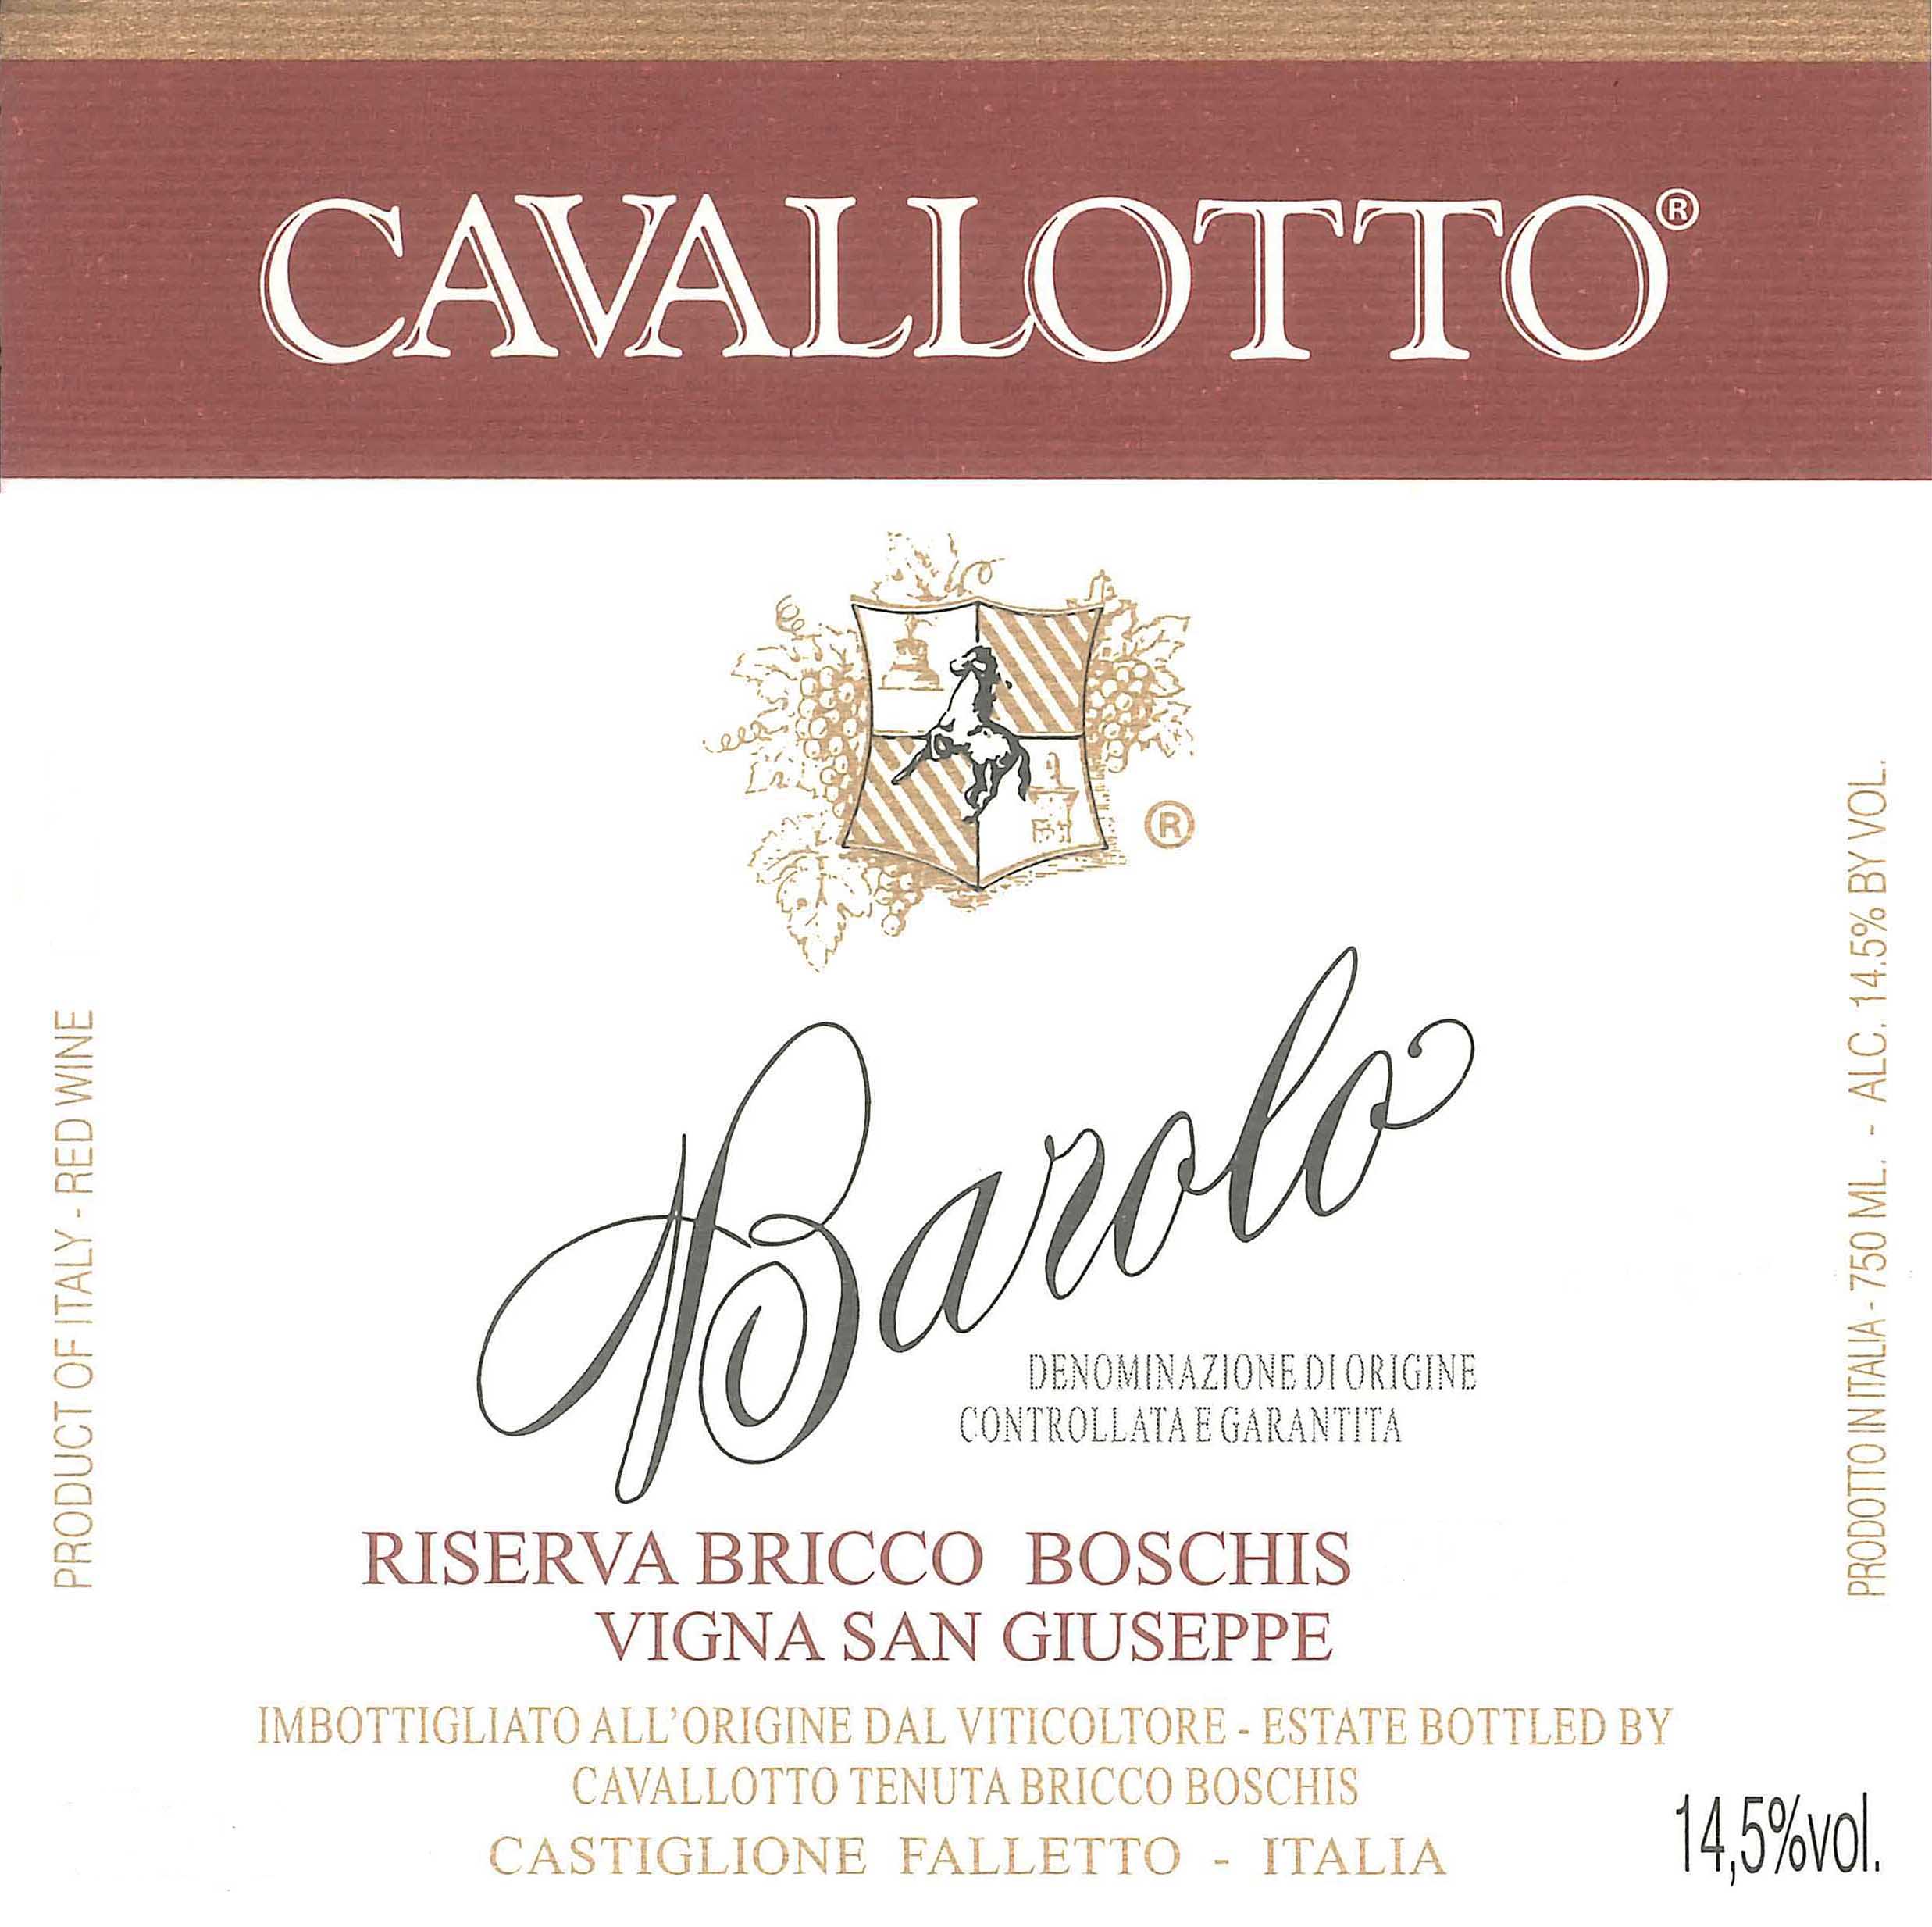 Cavallotto - Riserva Bricco Boschis - San Giuseppe label